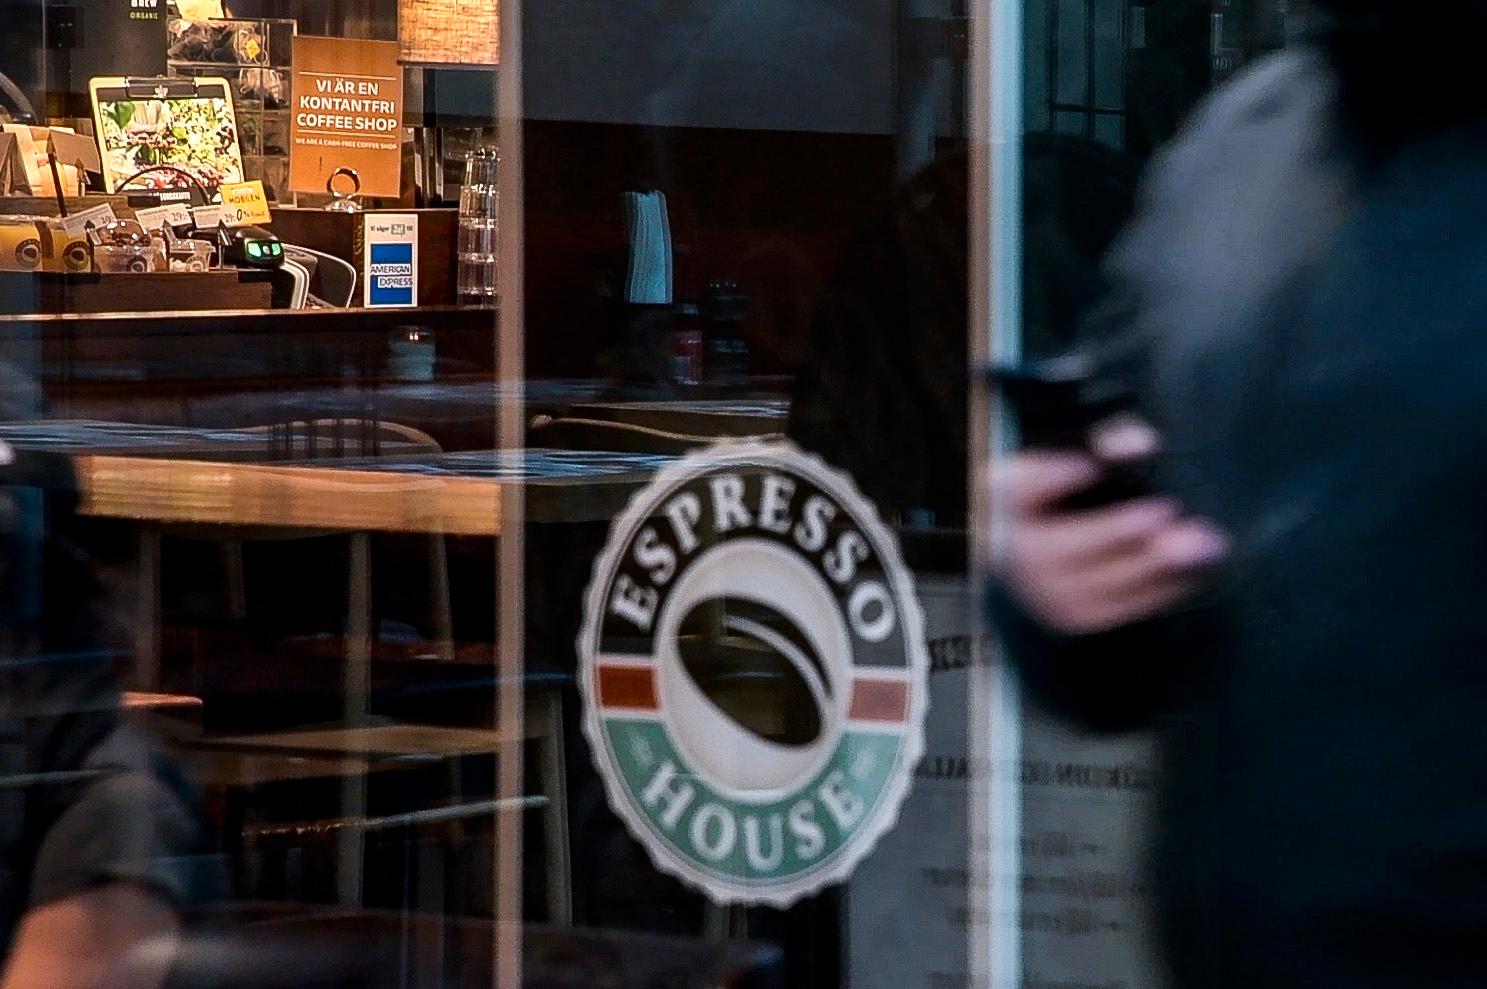 Polisens dömer ut kafékedjan Espresso houses brist på säkerhet i sin app. 